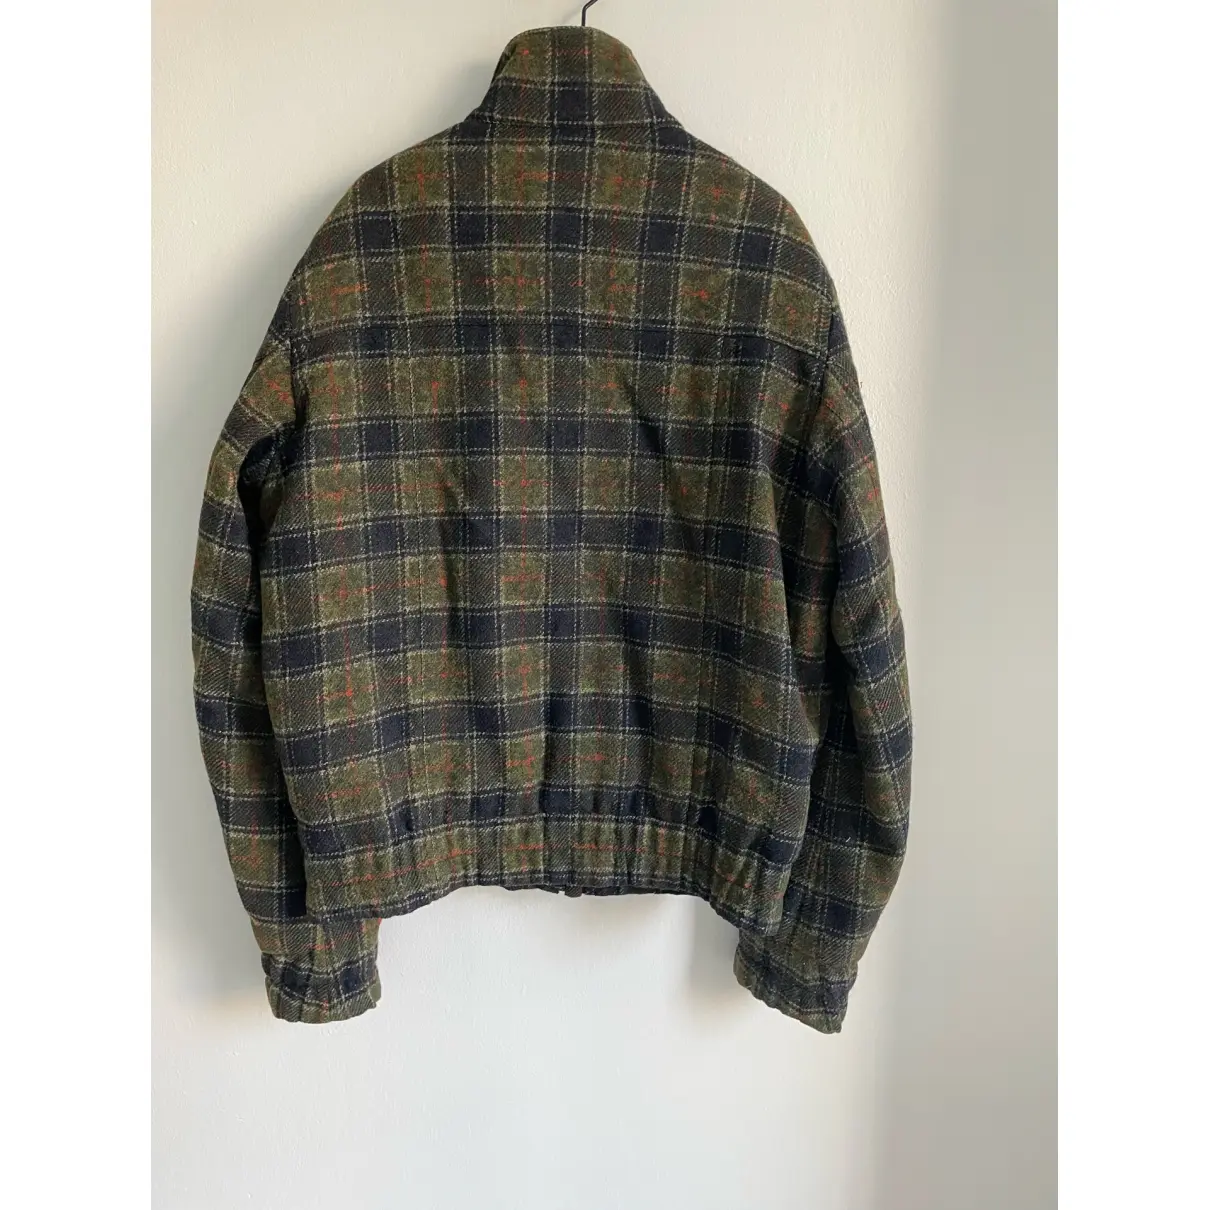 Buy Sonia Rykiel Wool jacket online